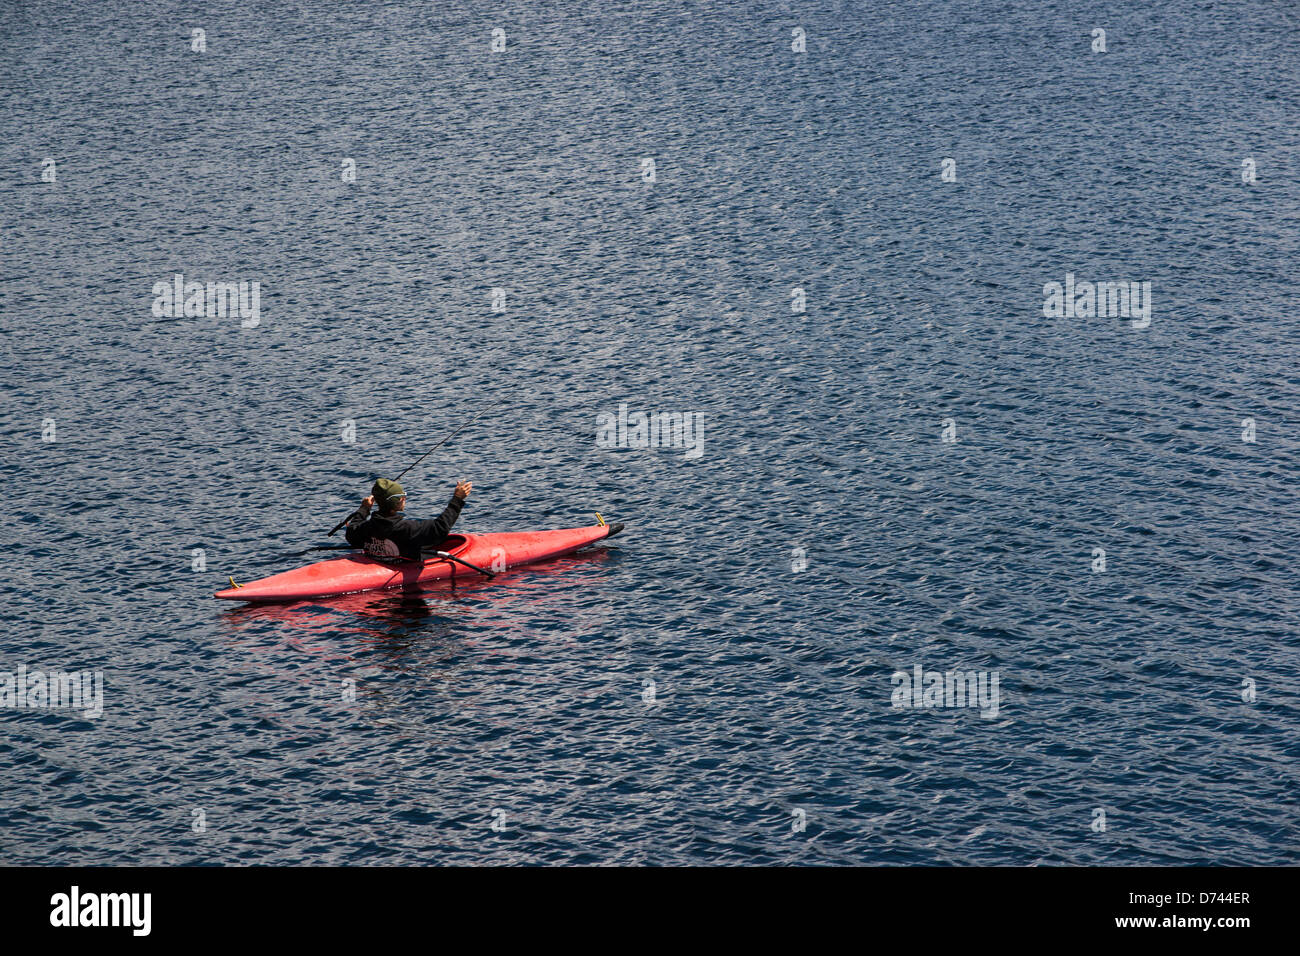 Un homme est vu pendant la pêche à partir d'un kayak rouge dans un lac avec de l'eau d'un bleu profond. Leadville, Colorado. Banque D'Images